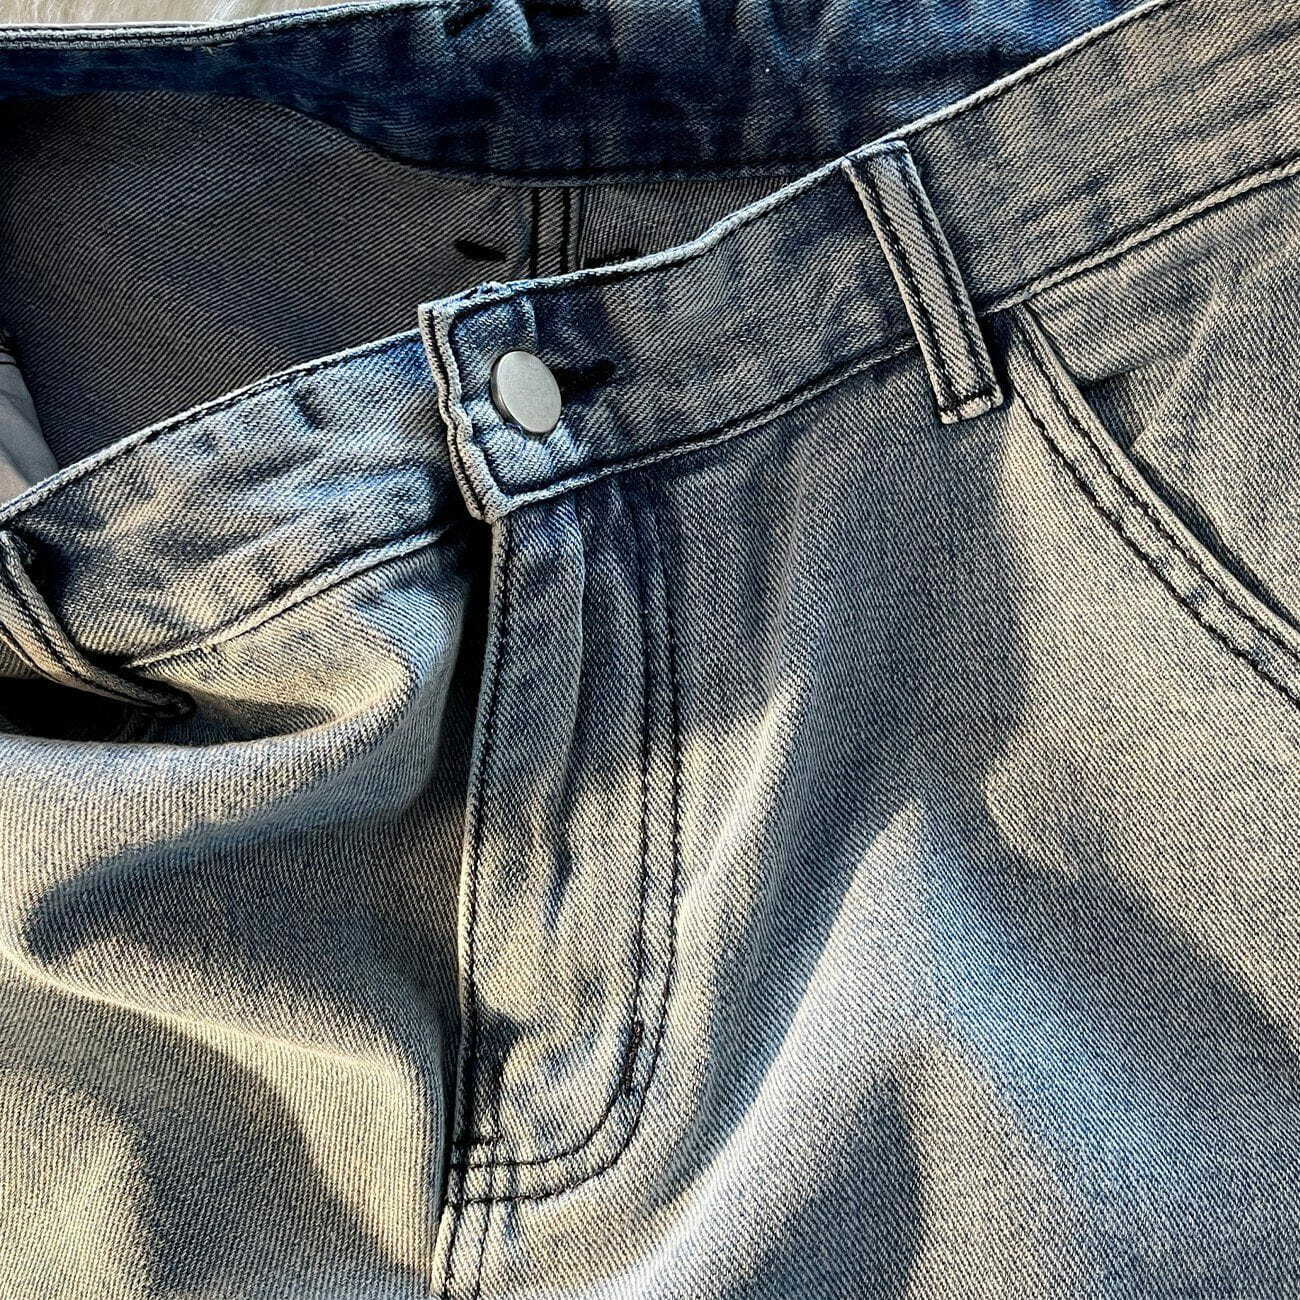 cargo pocket denim shorts urban chic & edgy streetwear 6064